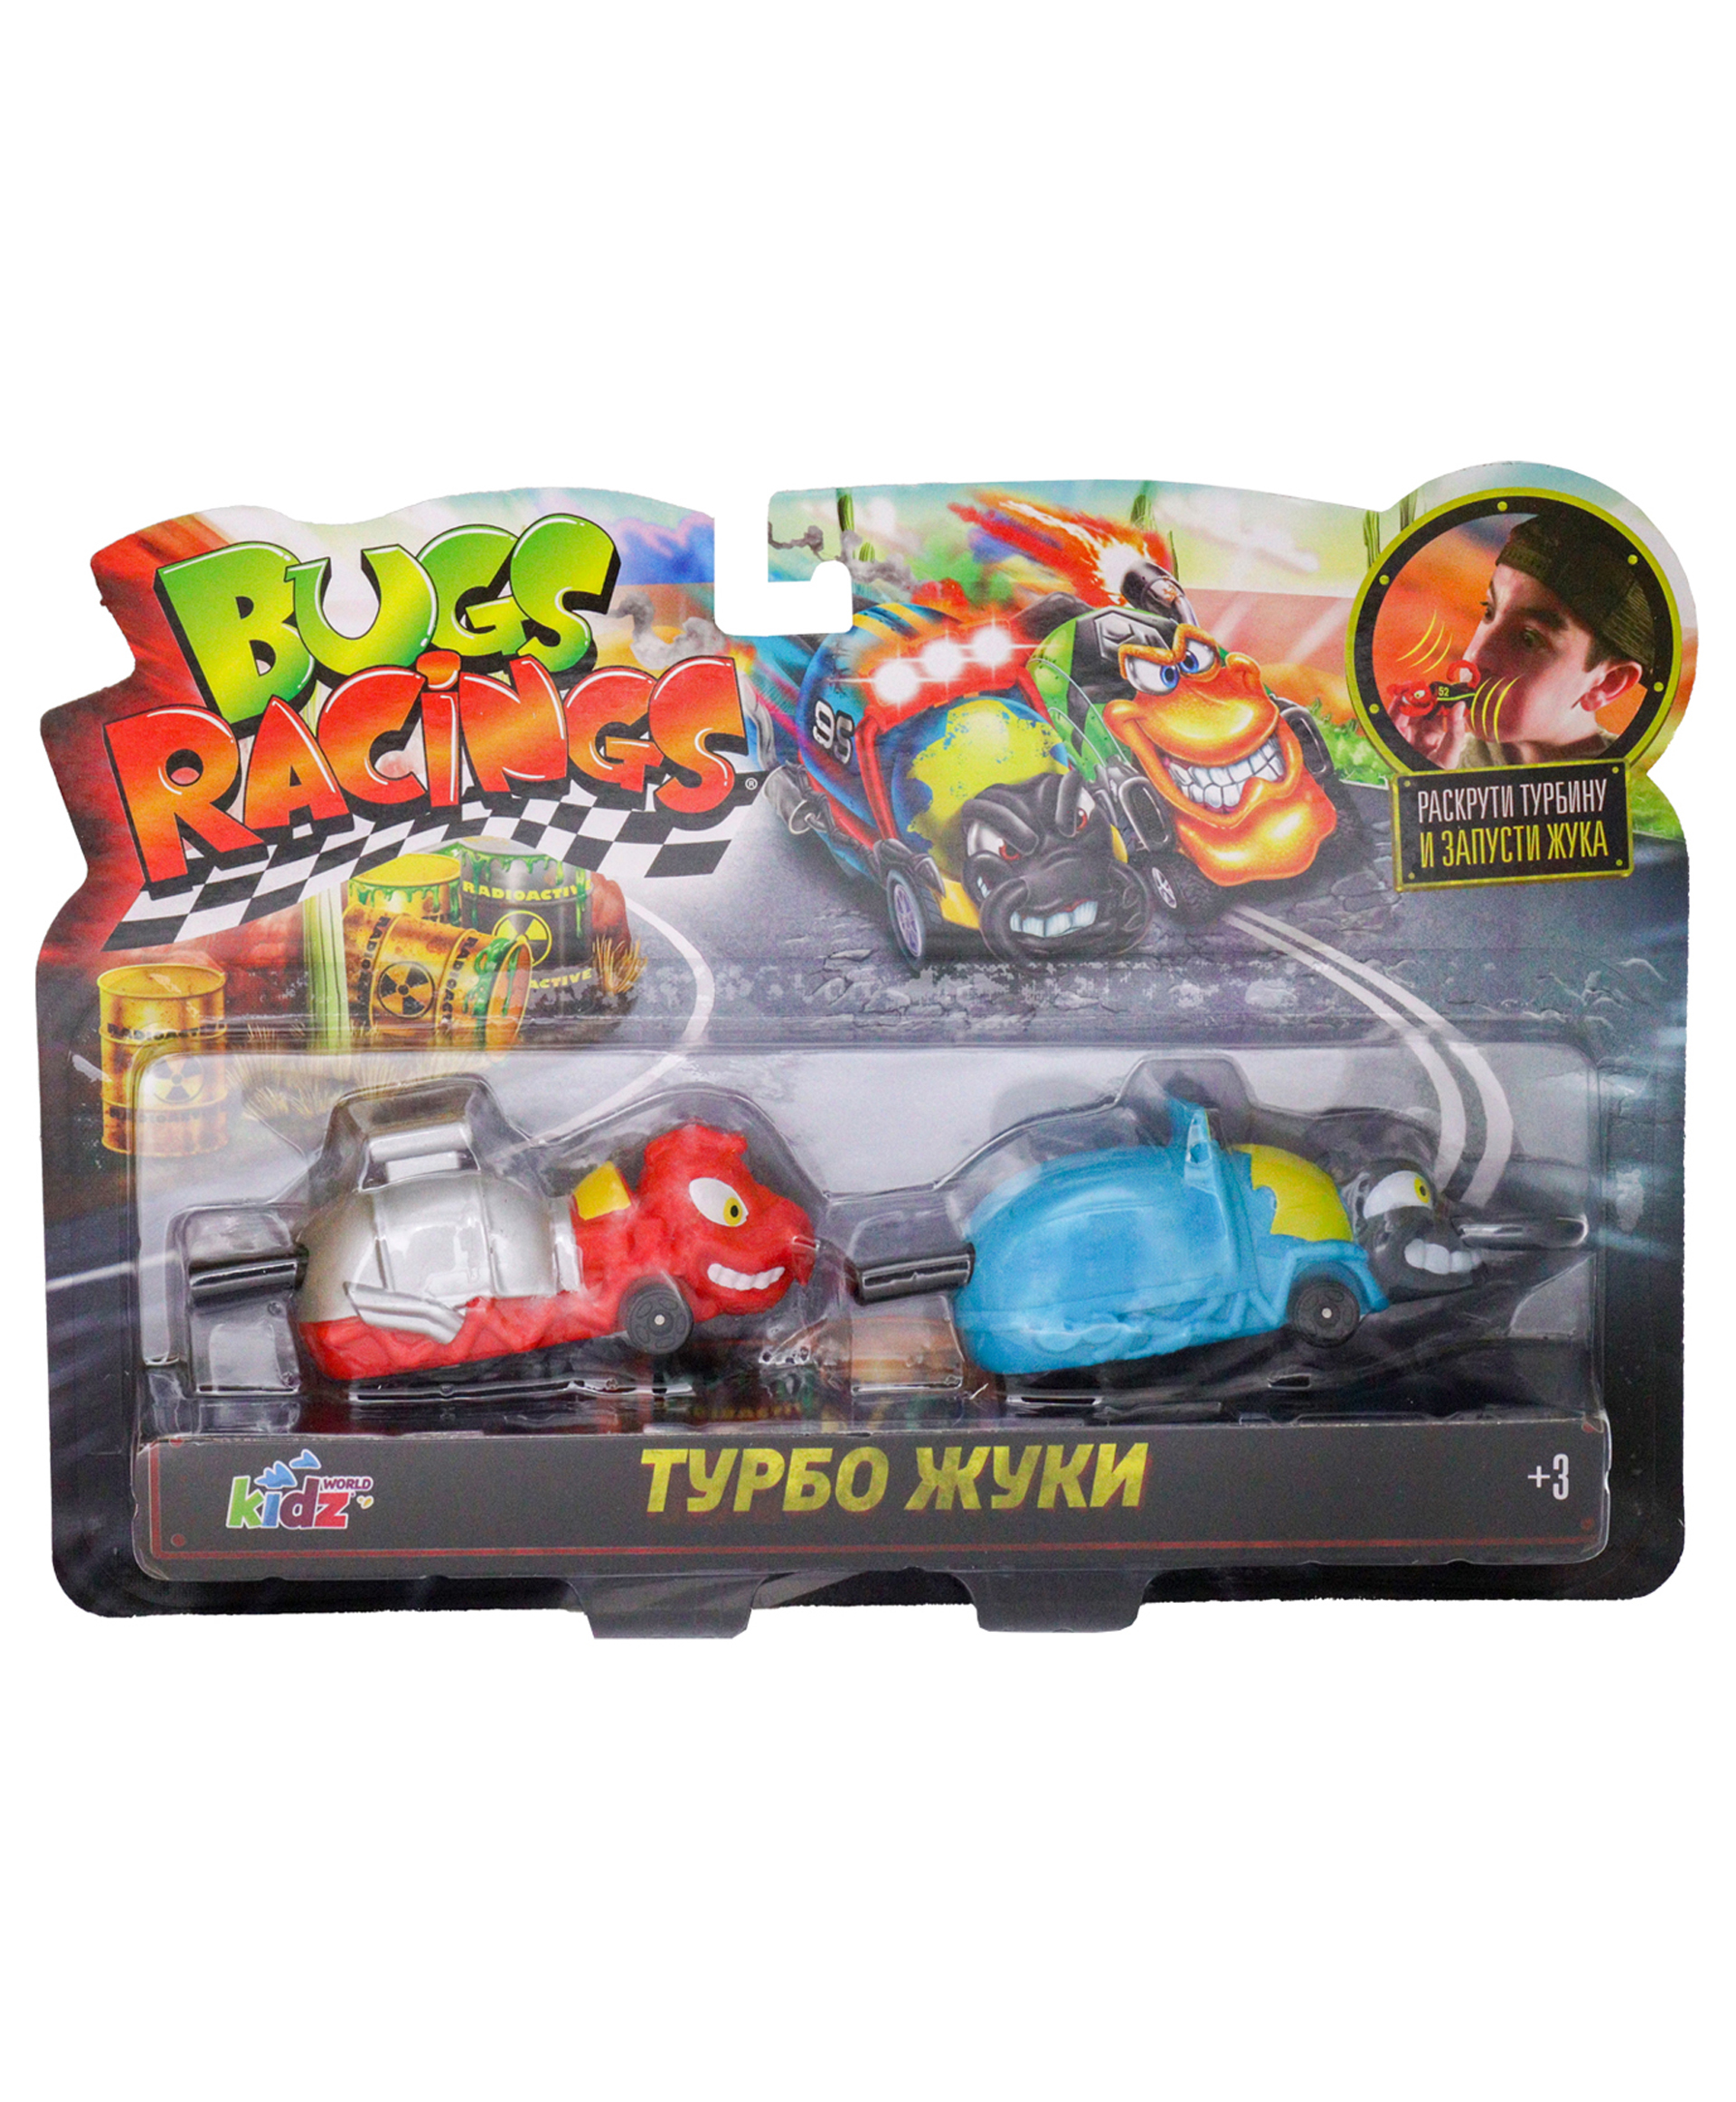 Игровой набор Bugs Racings Гонка жуков с 2 машинками красный Муравей Antrax и синий Жук Blast K02BR006-1 - фото 1